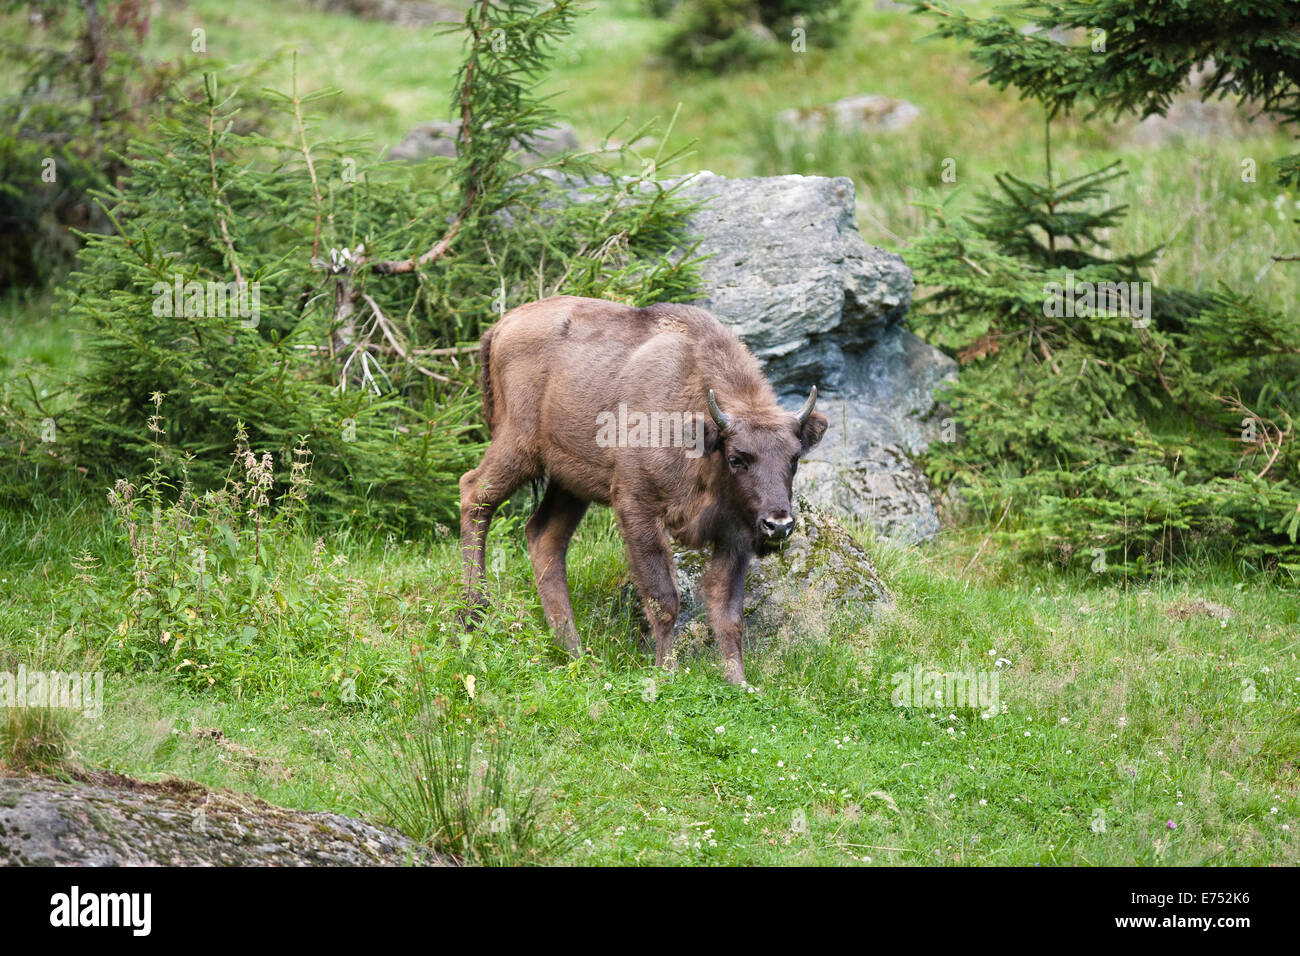 Bisonte Europeo cautivo en Alemania Foto de stock